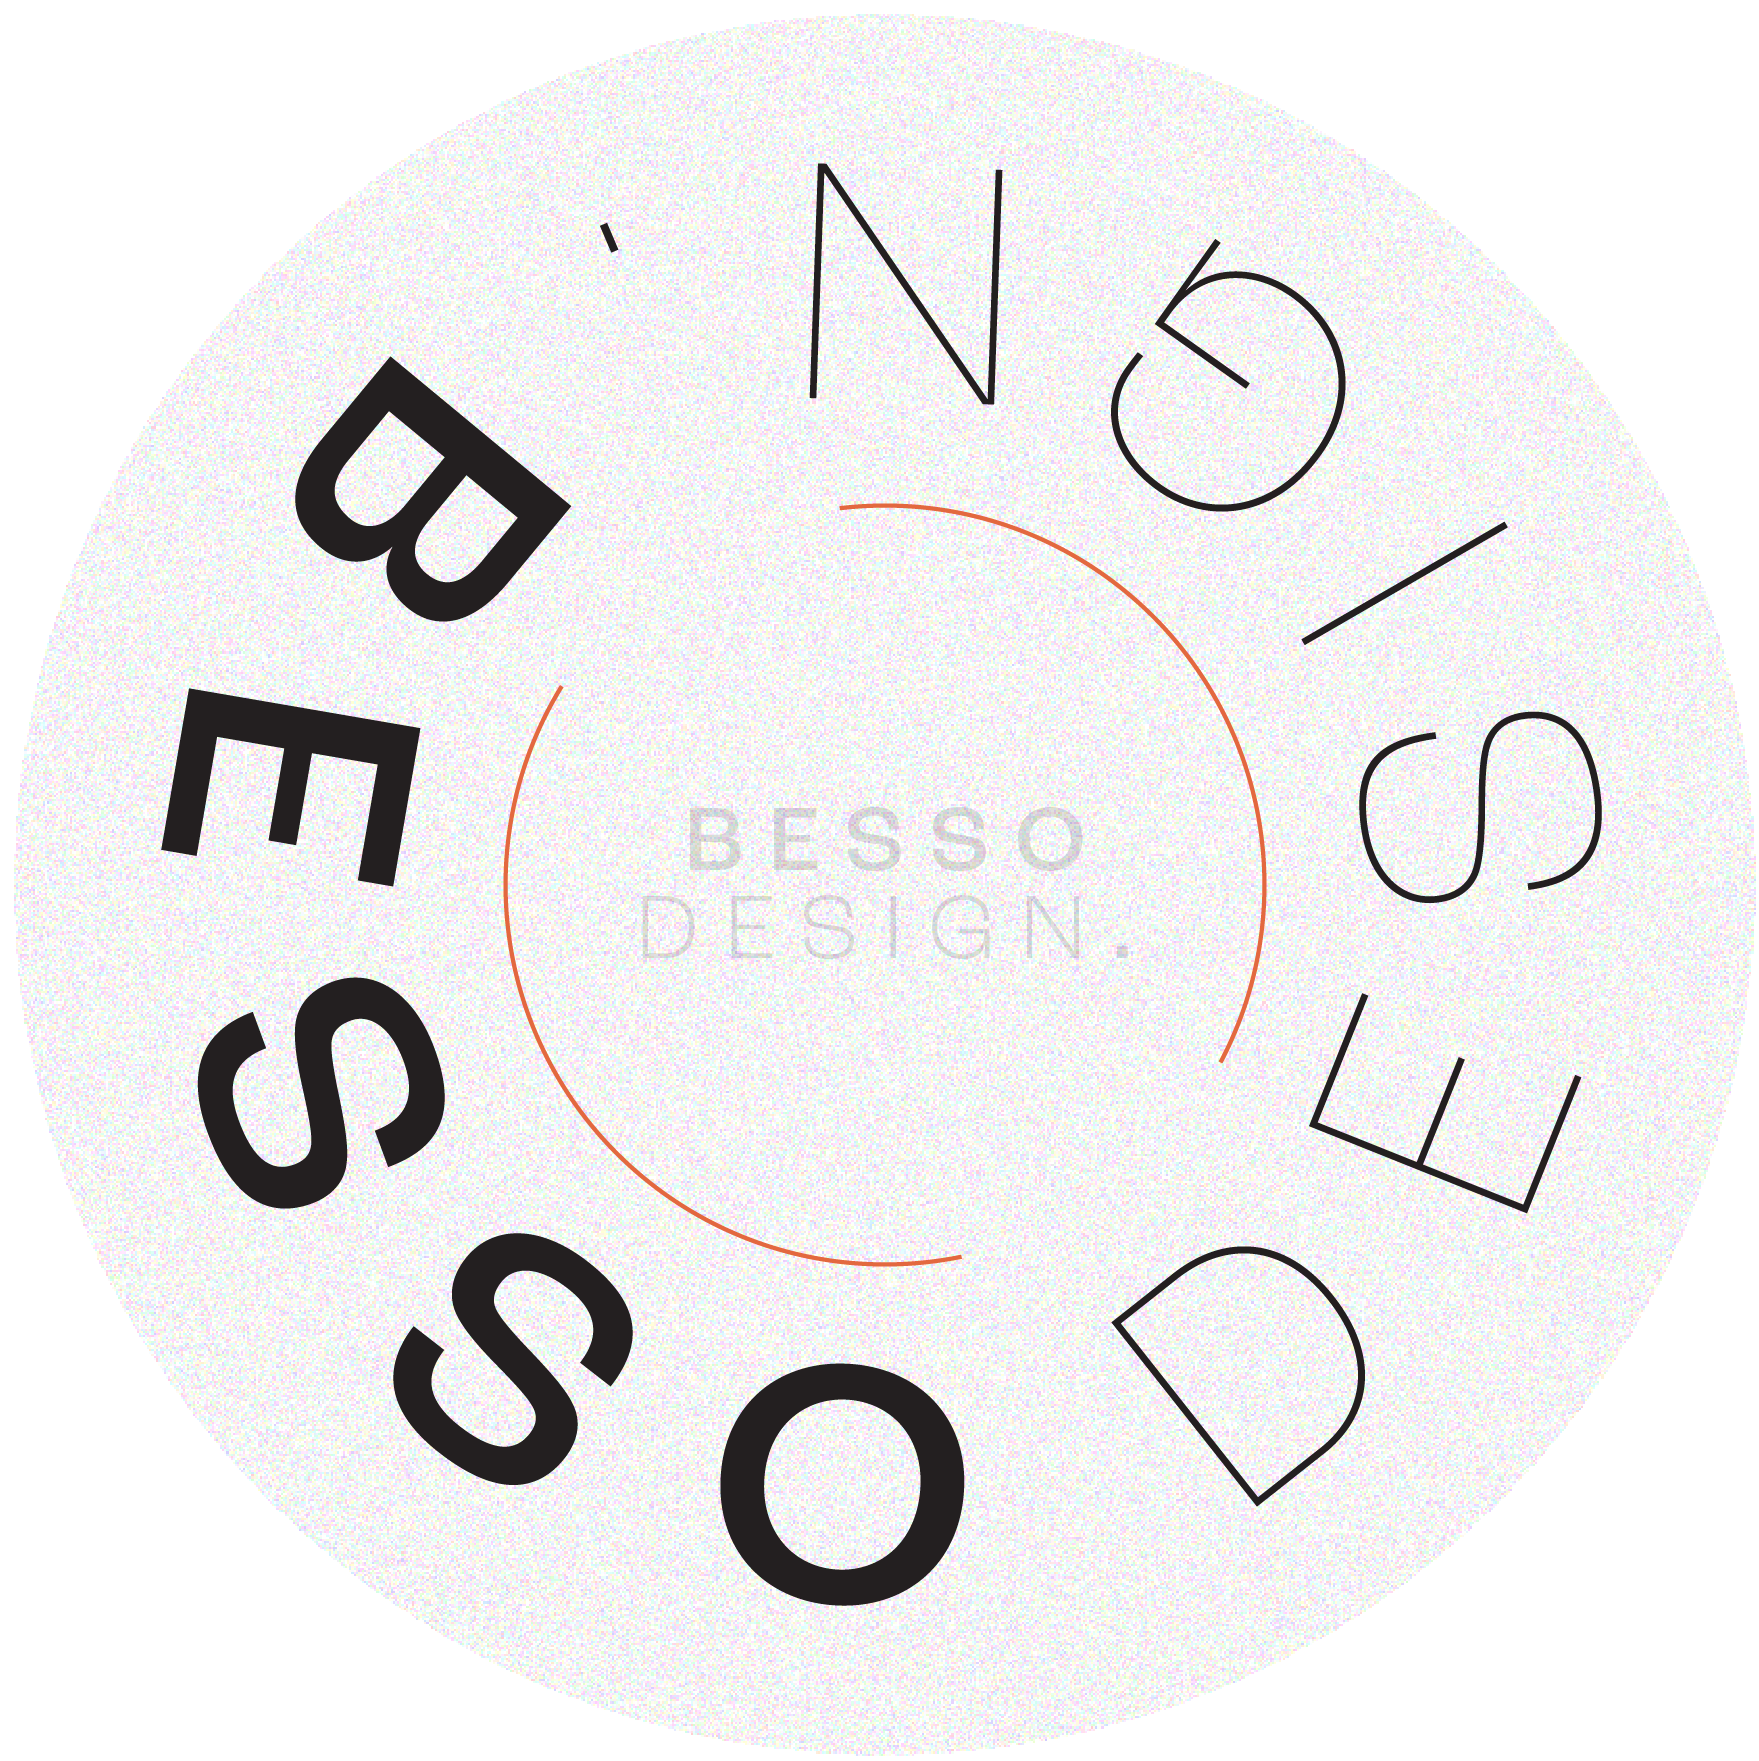 Besso Design